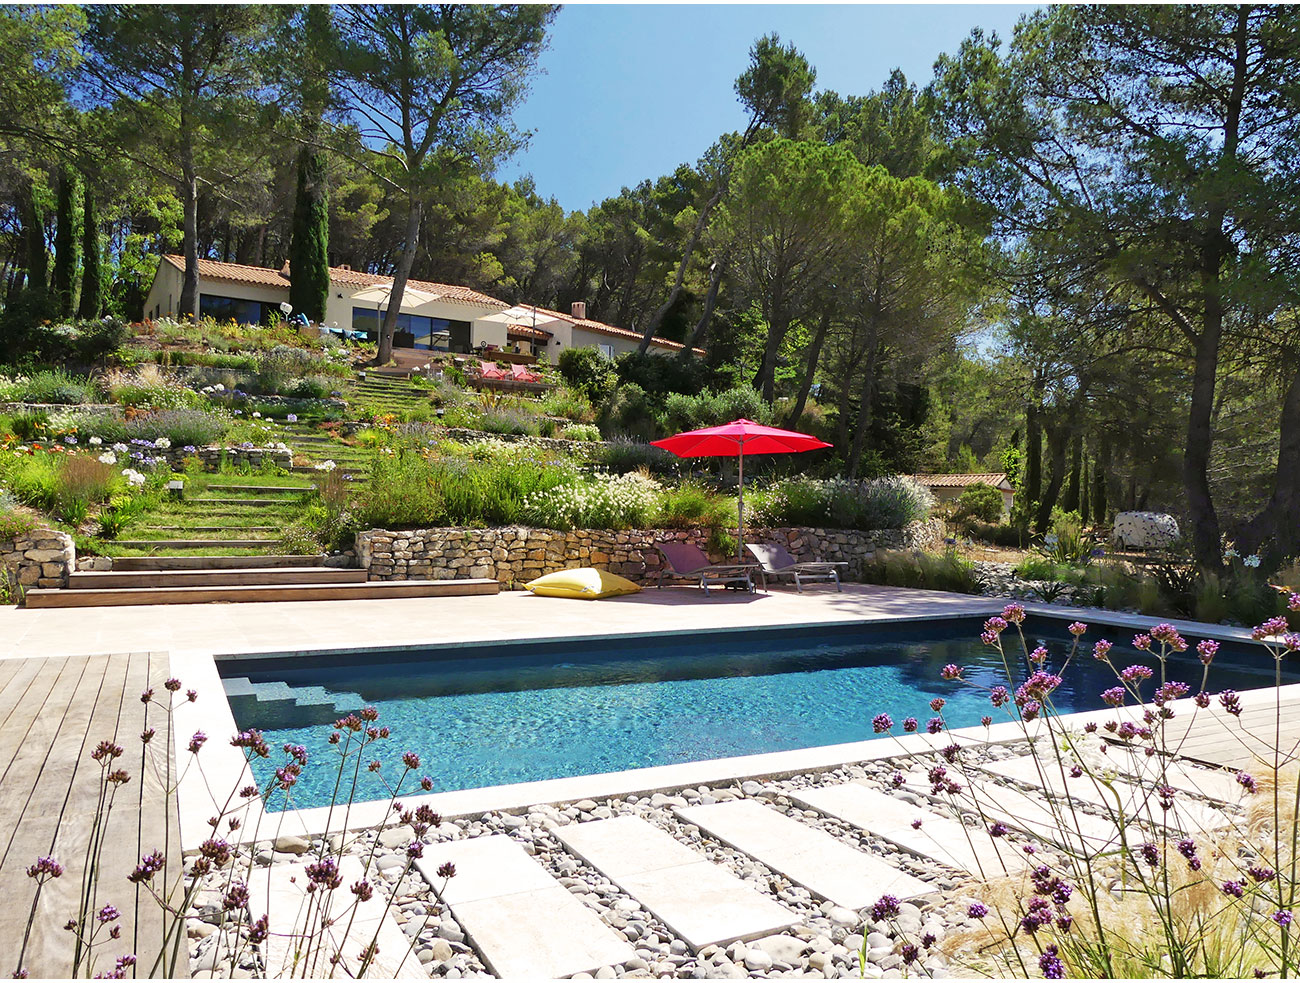 Atelier Naudier - Architecte paysagiste concepteur - Montpellier et Aix en Provence - Jardin en pente - Jardin de bords de piscine - aménagement jardin